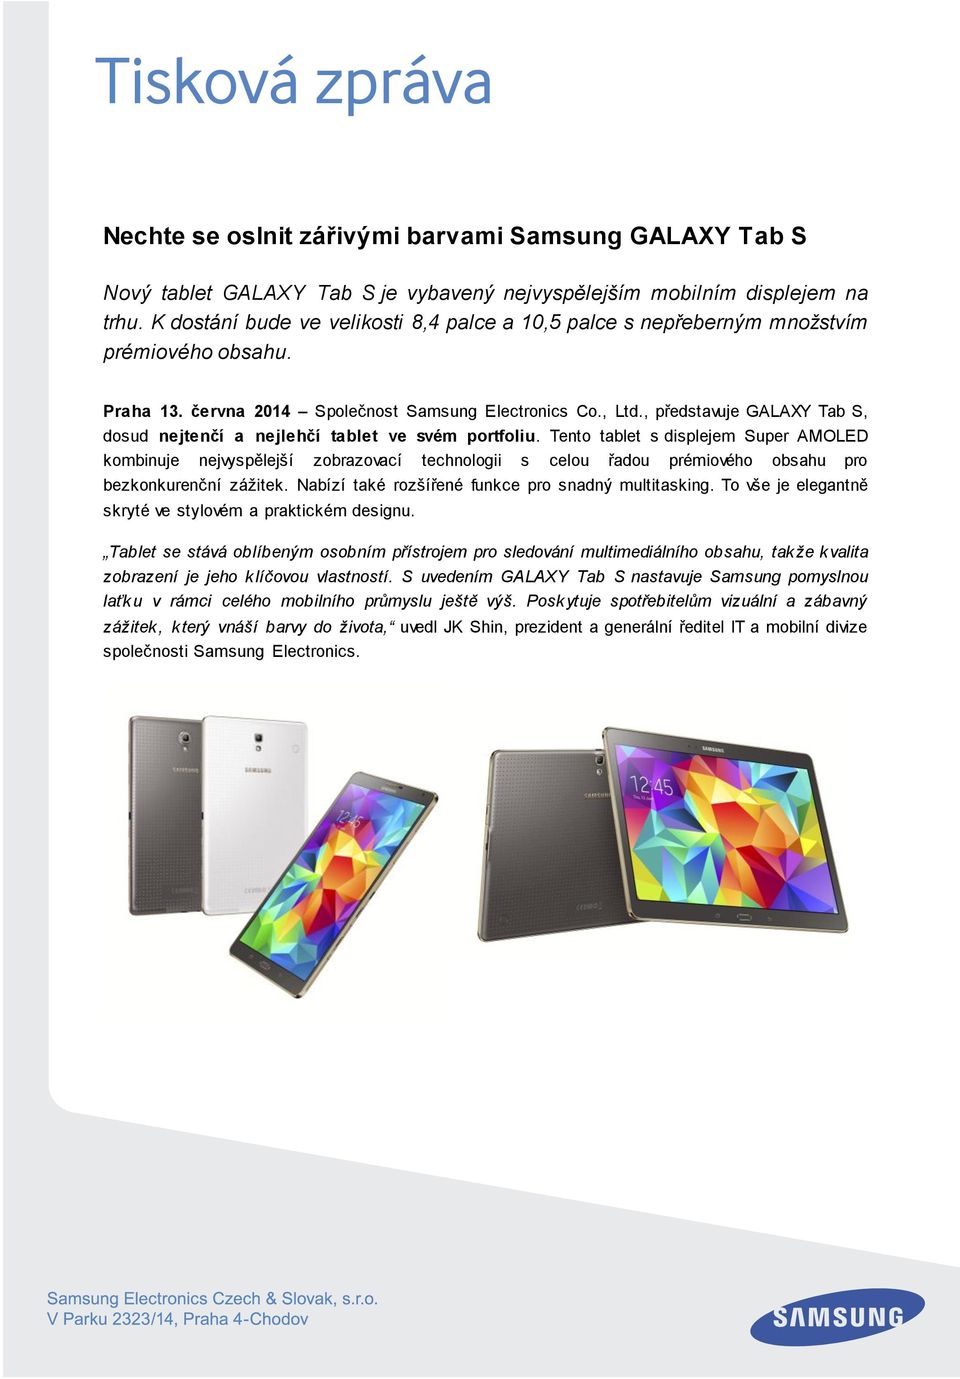 , představuje GALAXY Tab S, dosud nejtenčí a nejlehčí tablet ve svém portfoliu.